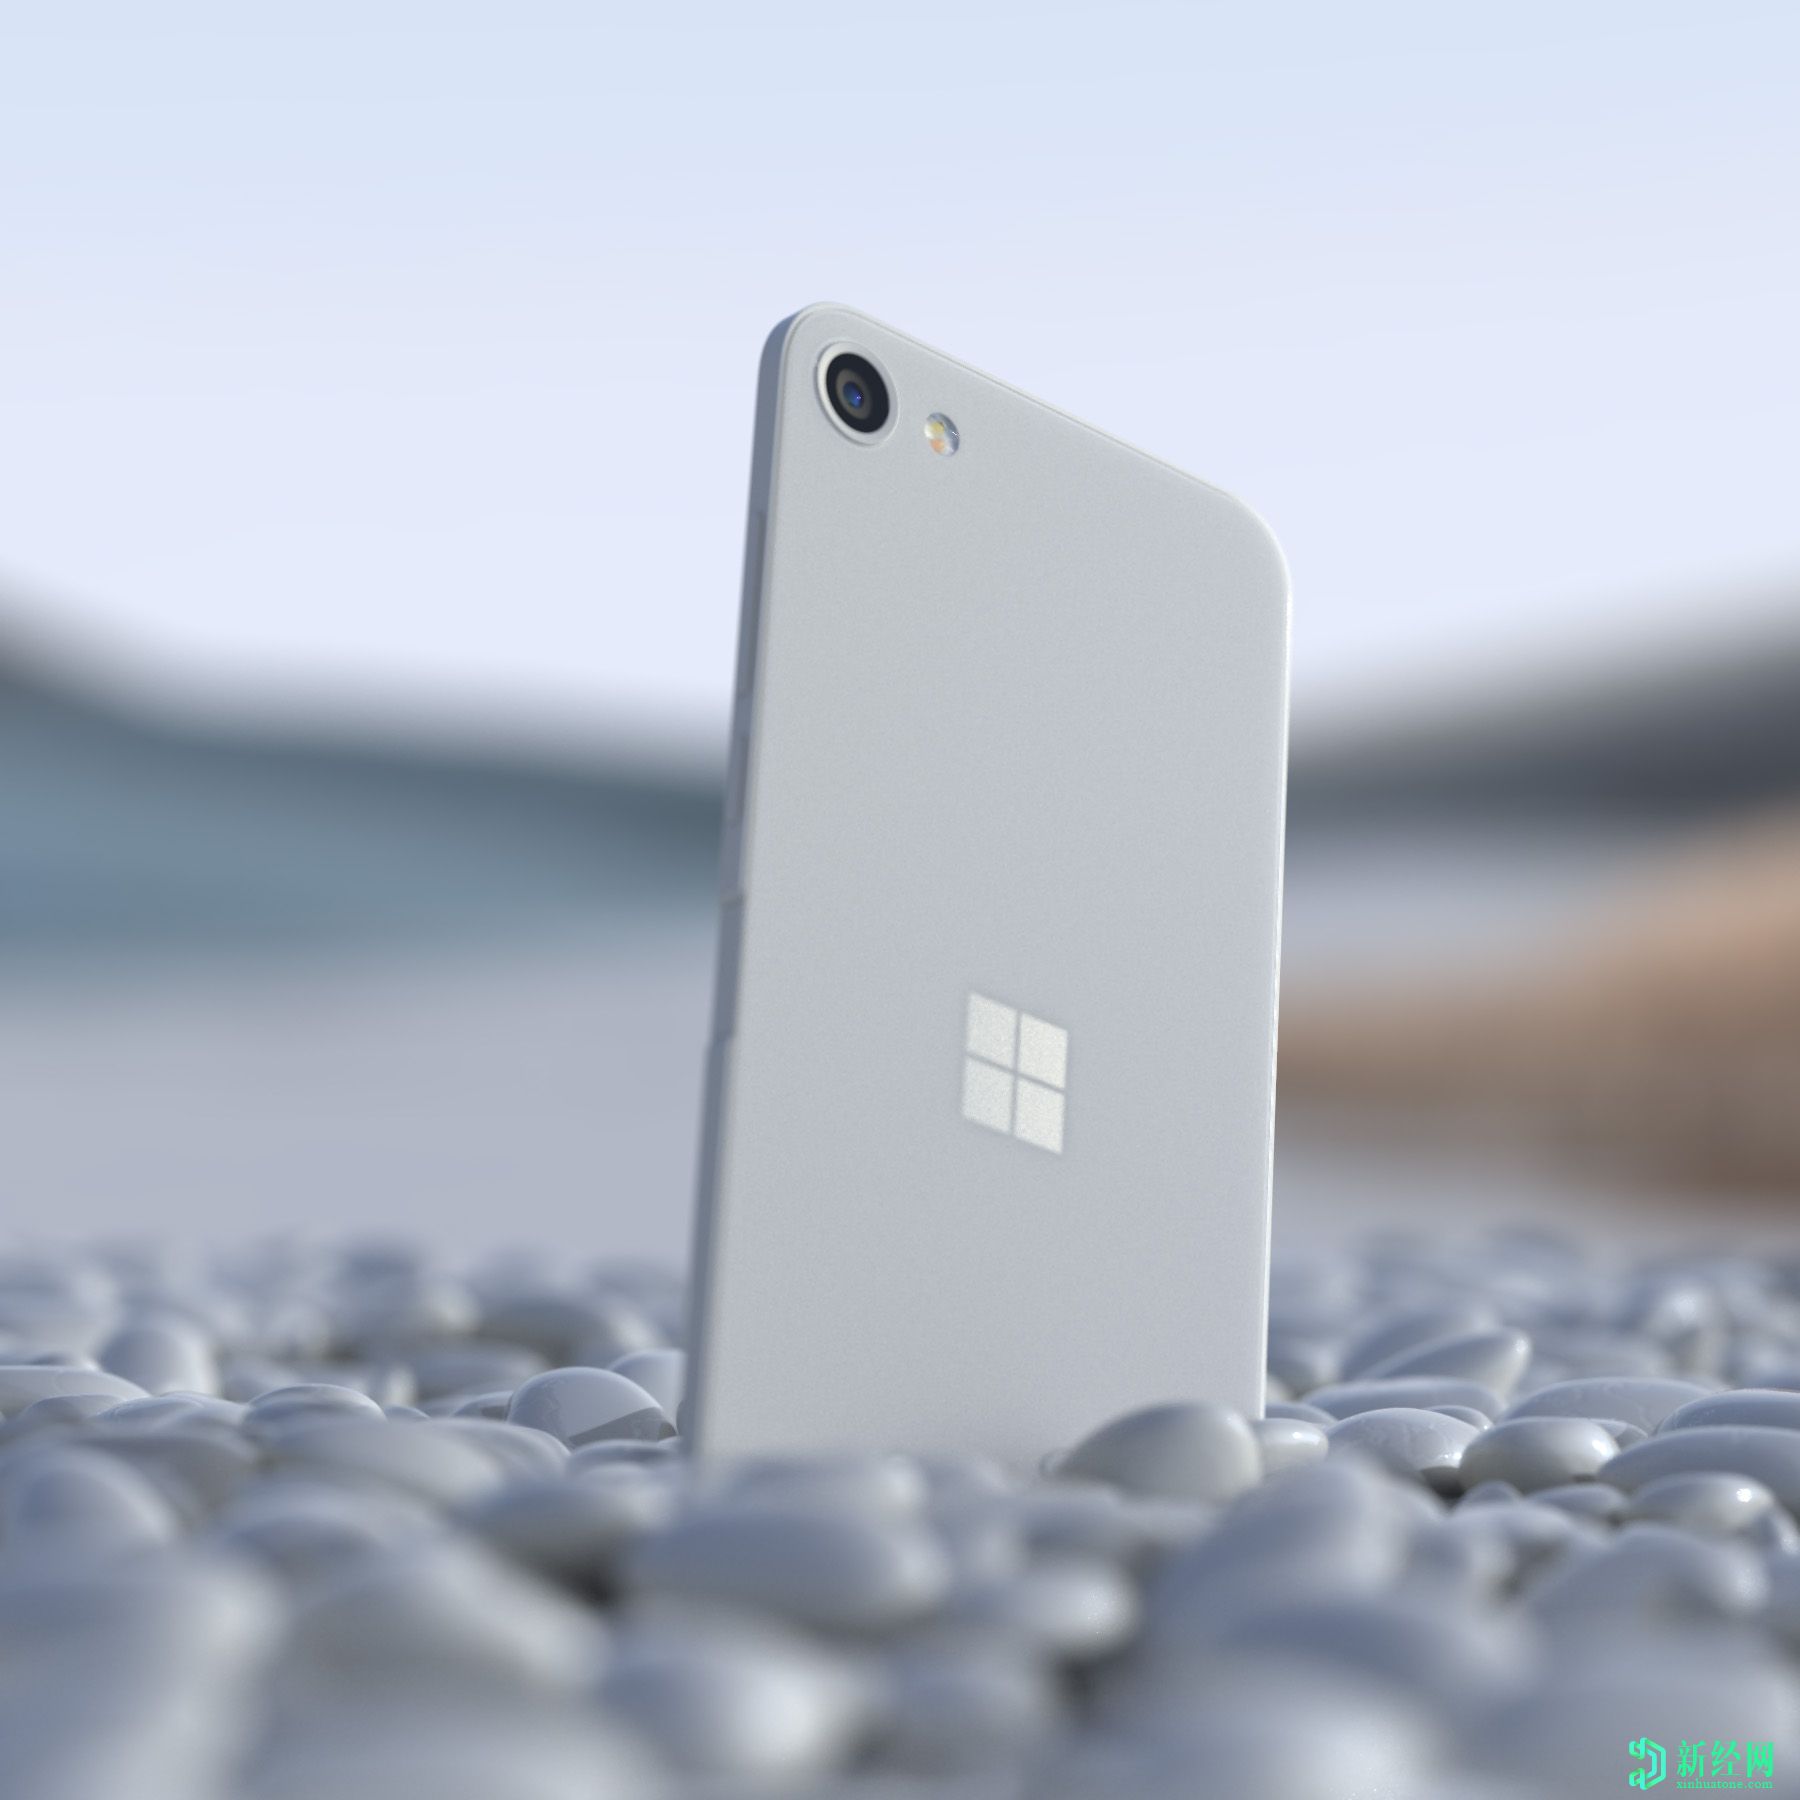 微软Surface Solo概念渲染展示了智能手机设计